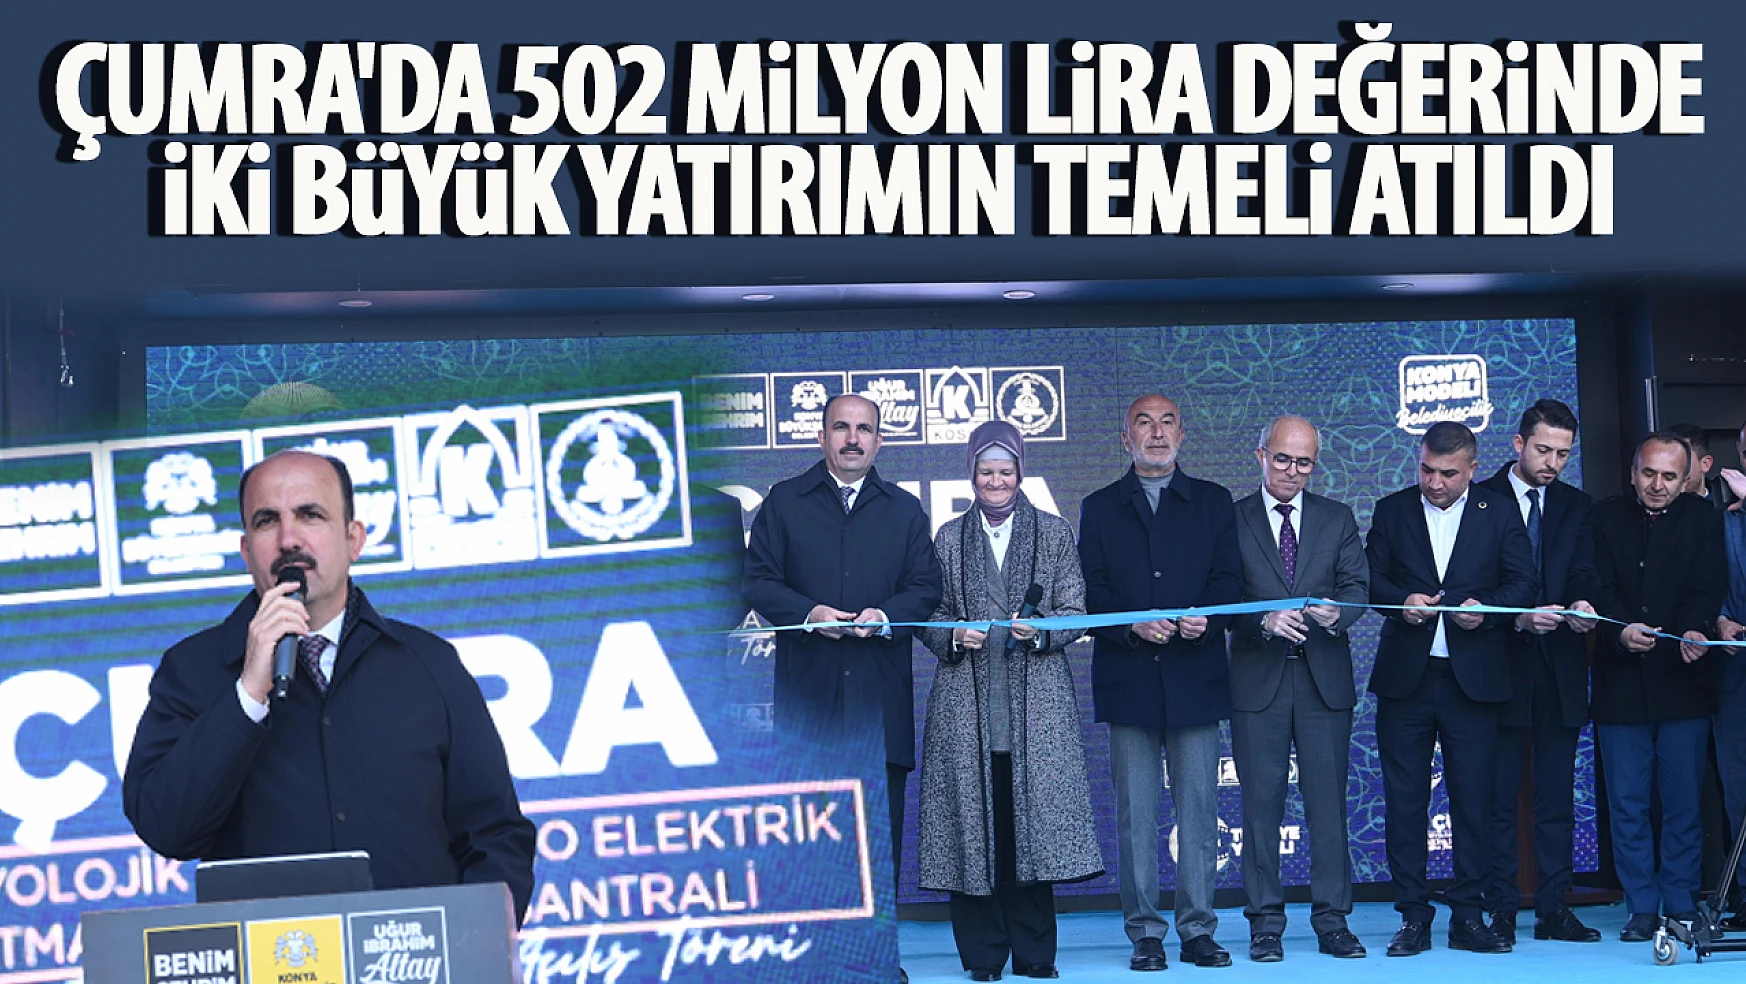 Başkan Altay Çumra'da 502 Milyon Lira Değerinde İki Büyük Yatırımın Temelini Attı, Açılışını Yaptı